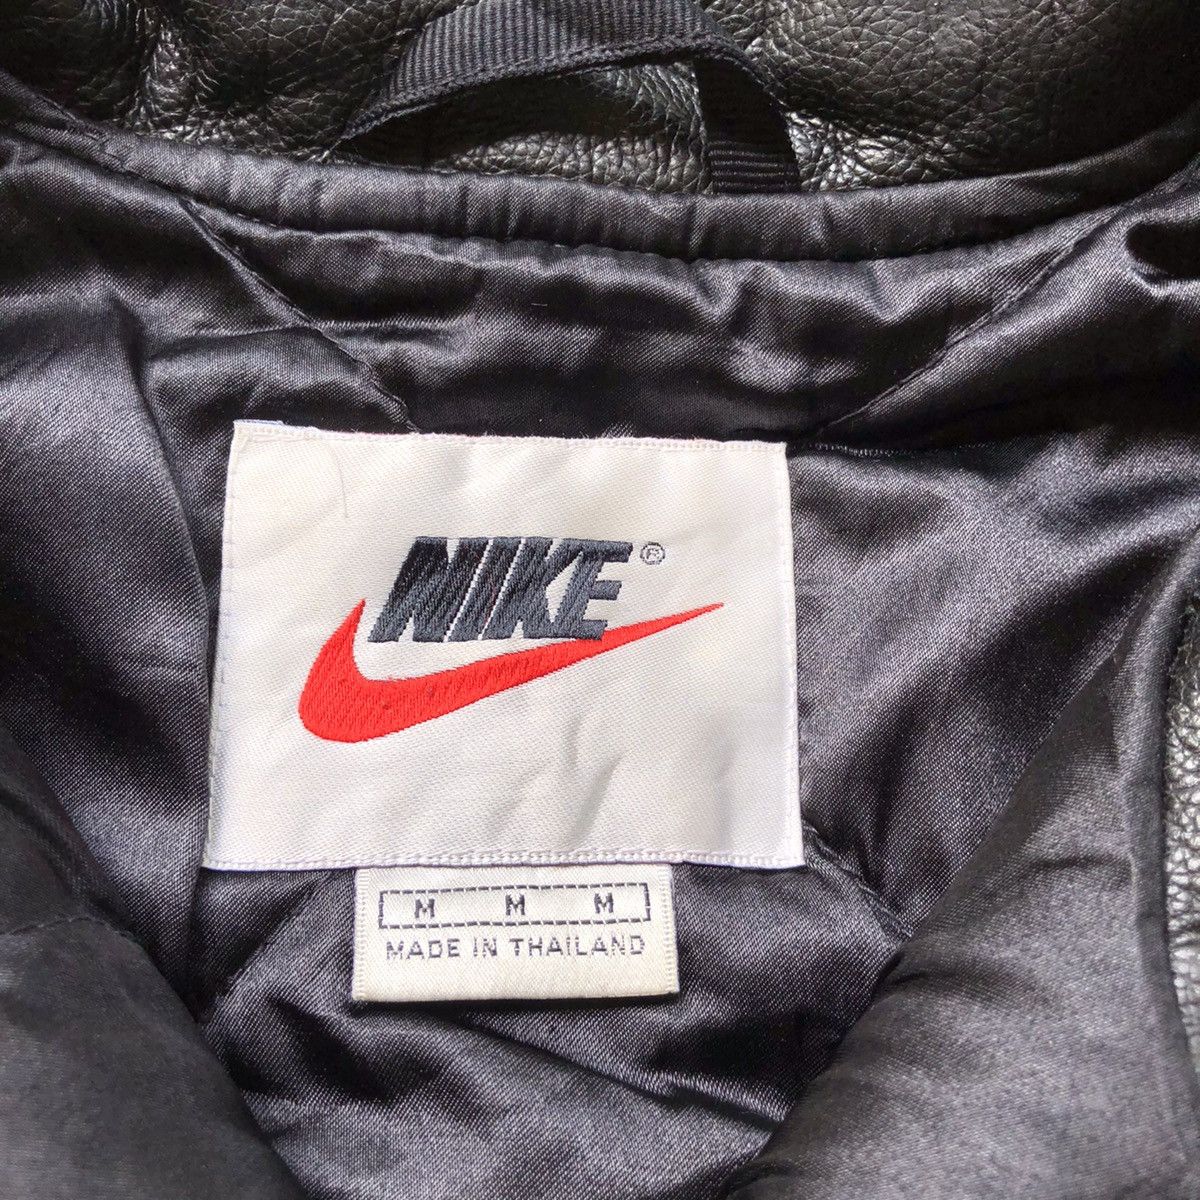 Nike Vintage 90s Nike Swoosh Leather Varsity Jacket Size US M / EU 48-50 / 2 - 4 Thumbnail